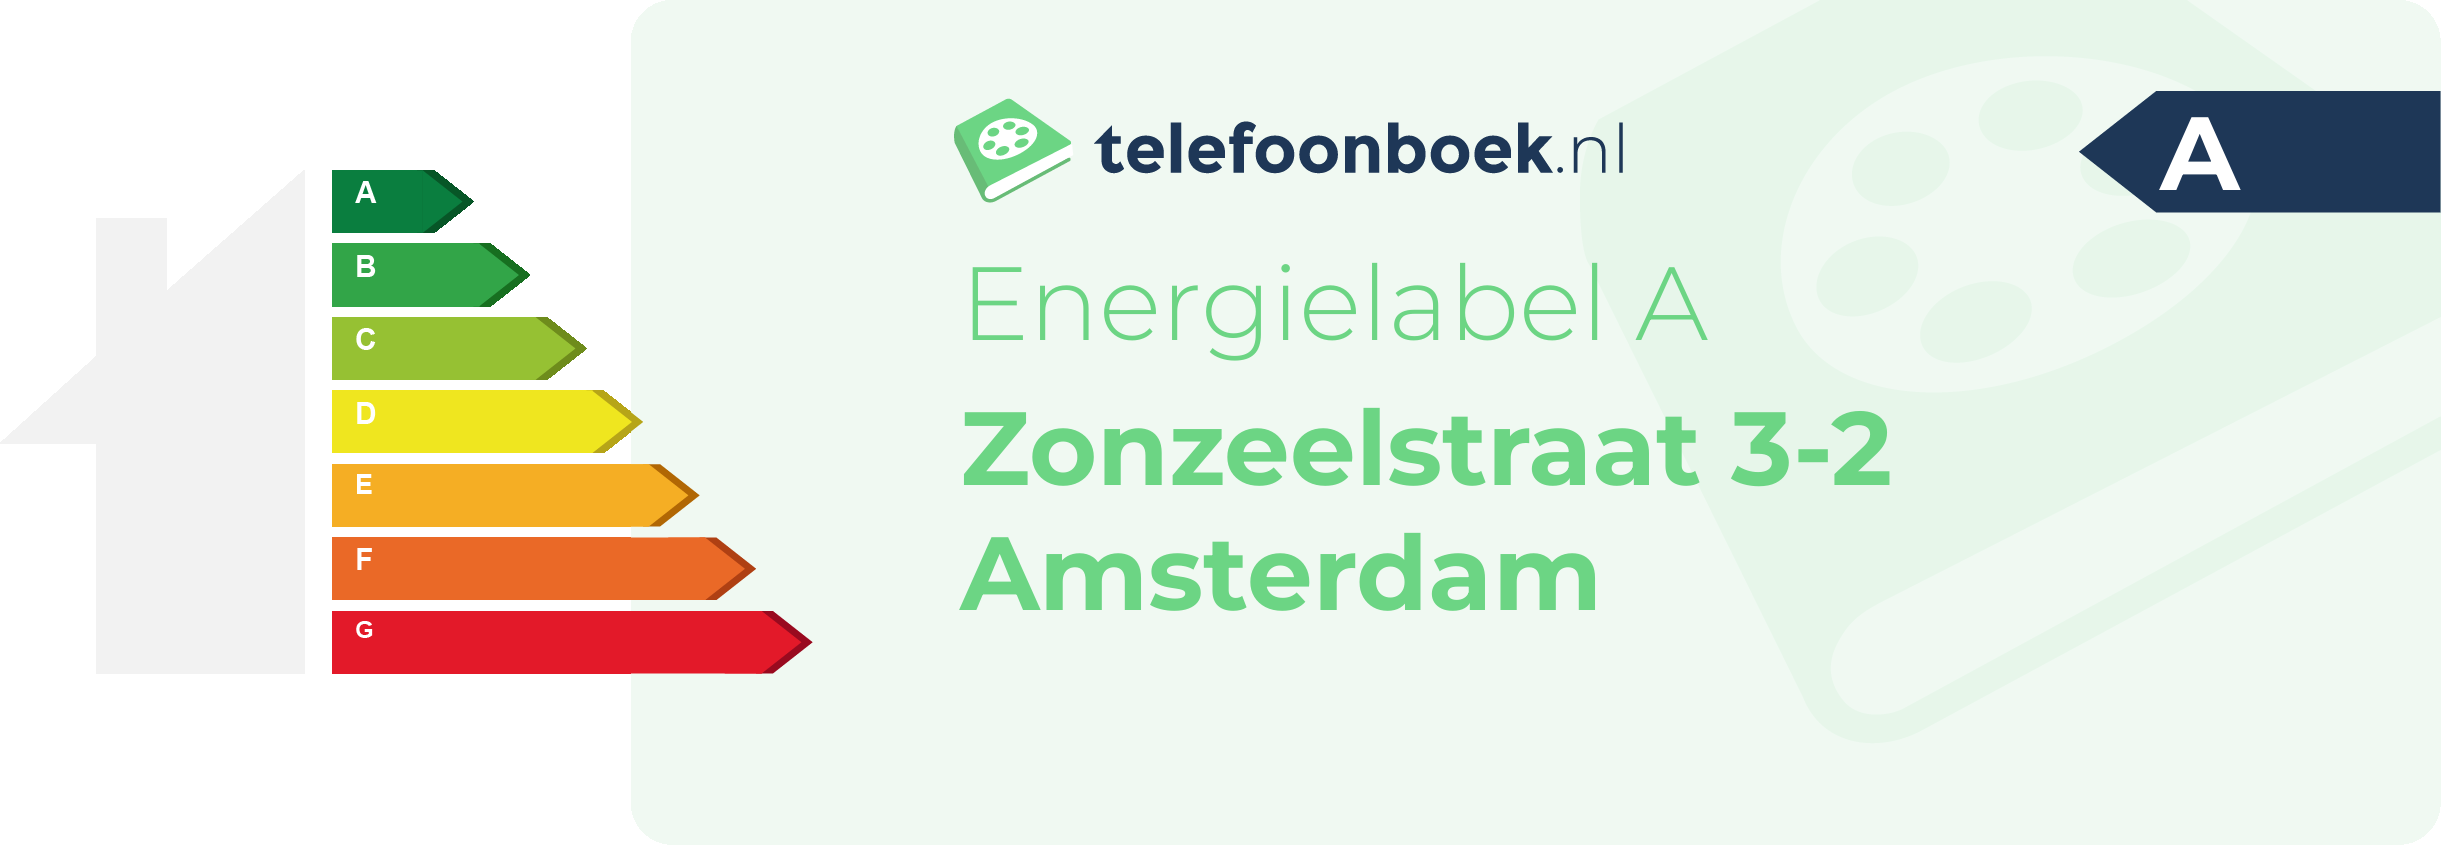 Energielabel Zonzeelstraat 3-2 Amsterdam